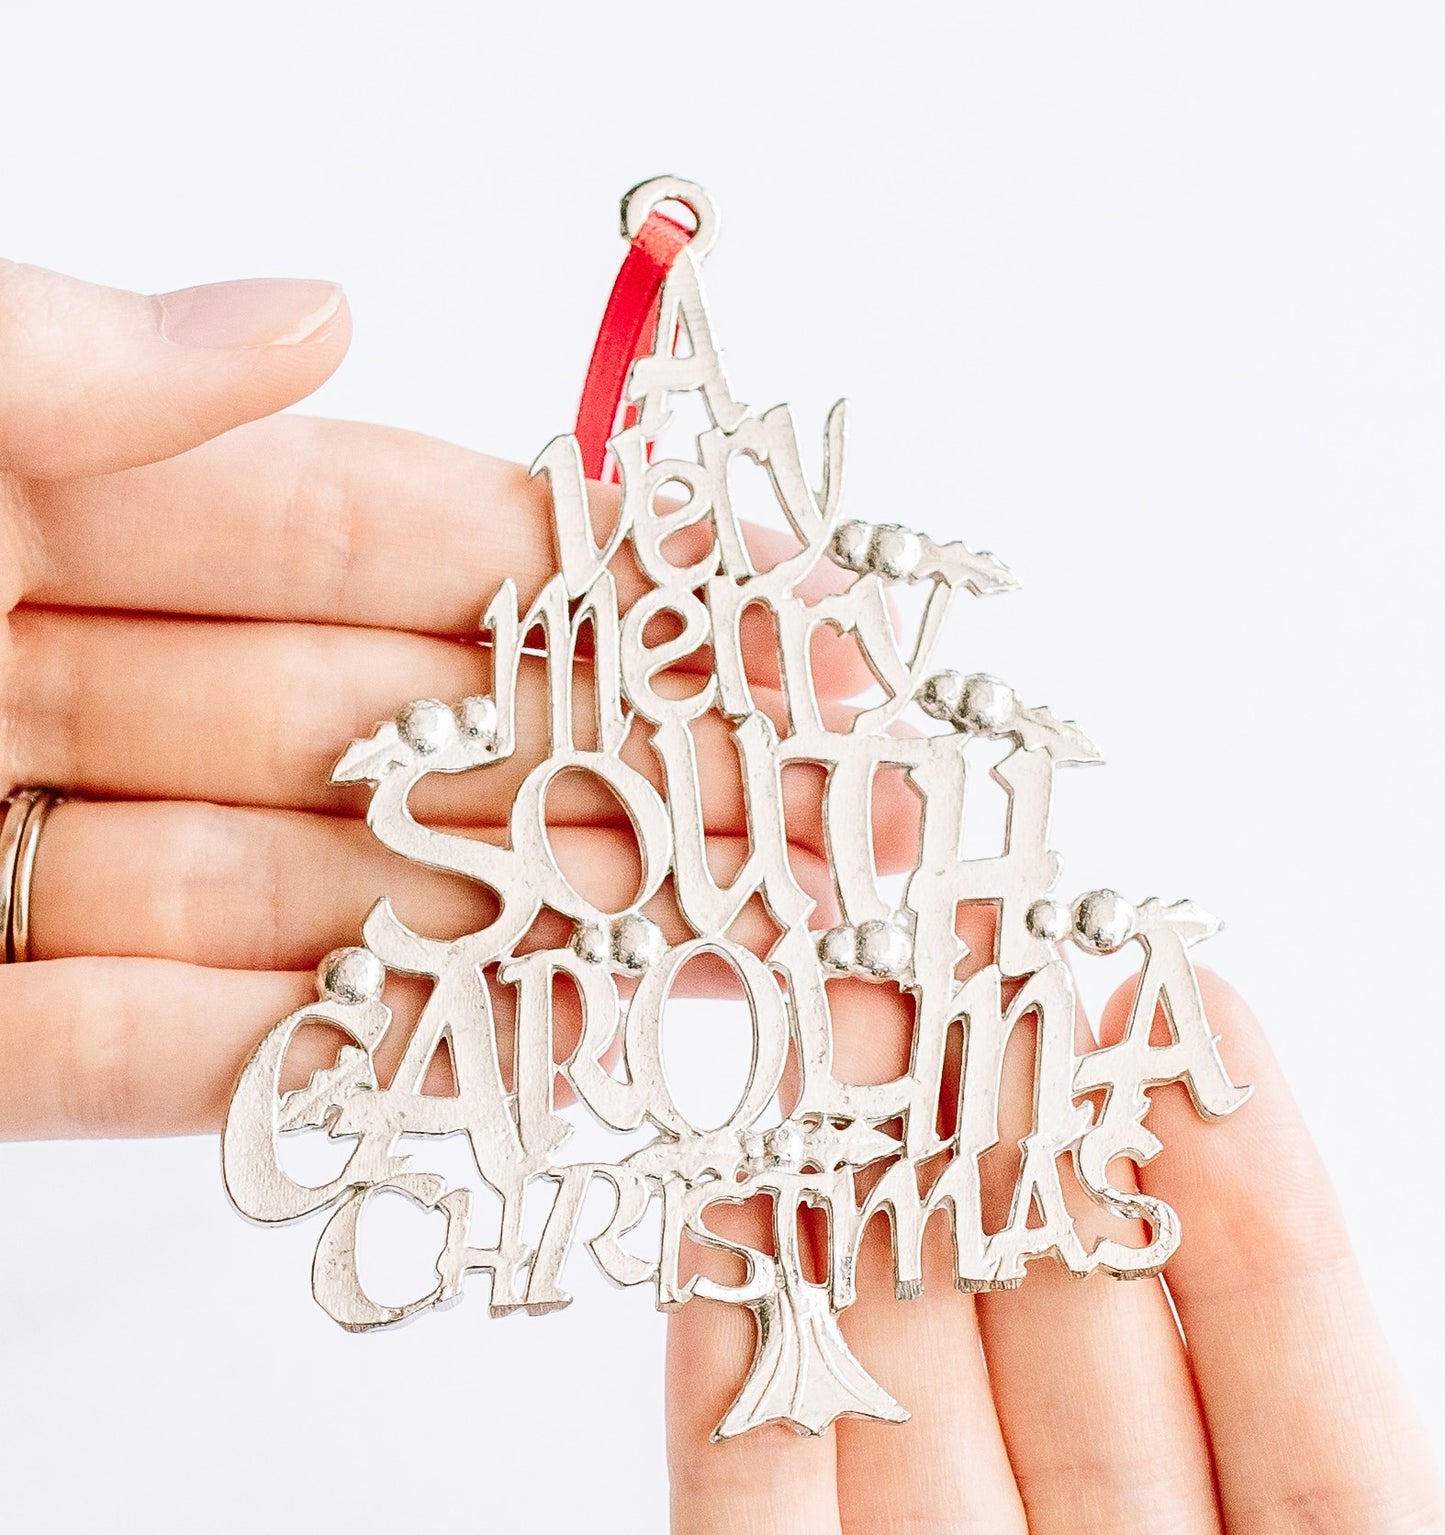 South Carolina Christmas Ornament - SC Travel Souvenir and Gift